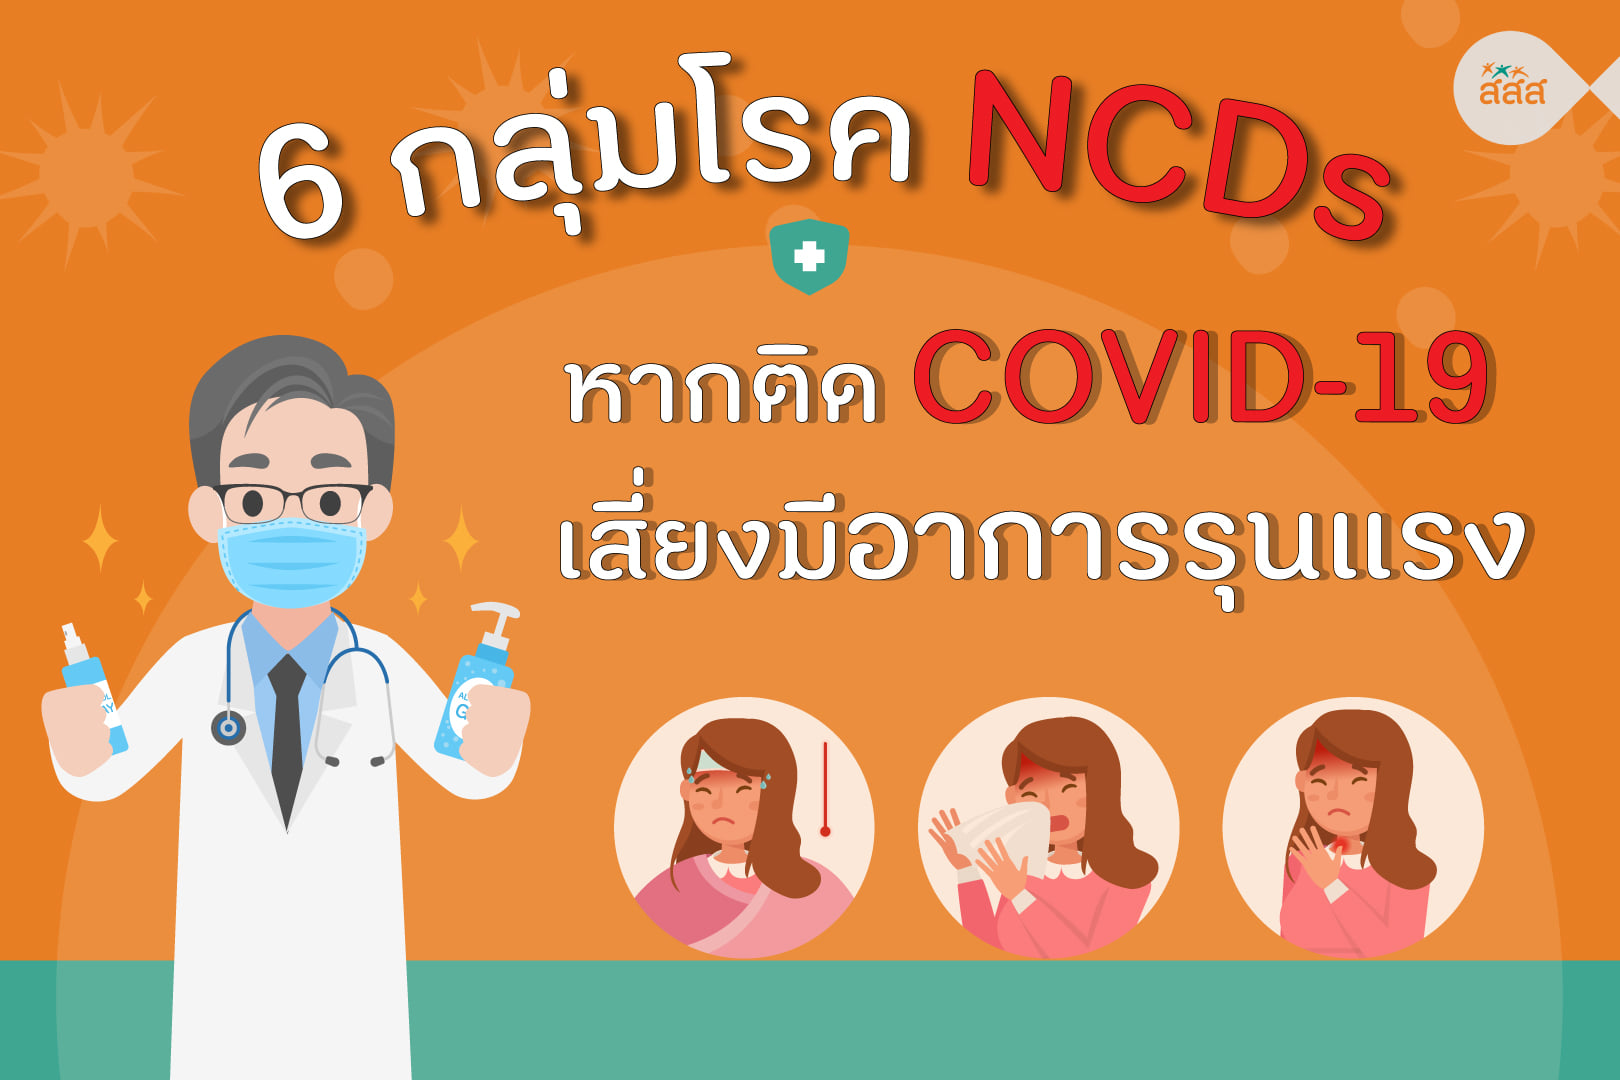  6 กลุ่มโรค NCDs หากติด COVID-19 เสี่ยงมีอาการรุนแรง พร้อมแนวทางการป้องกันให้ห่างไกลจากกลุ่มโรค NCDs